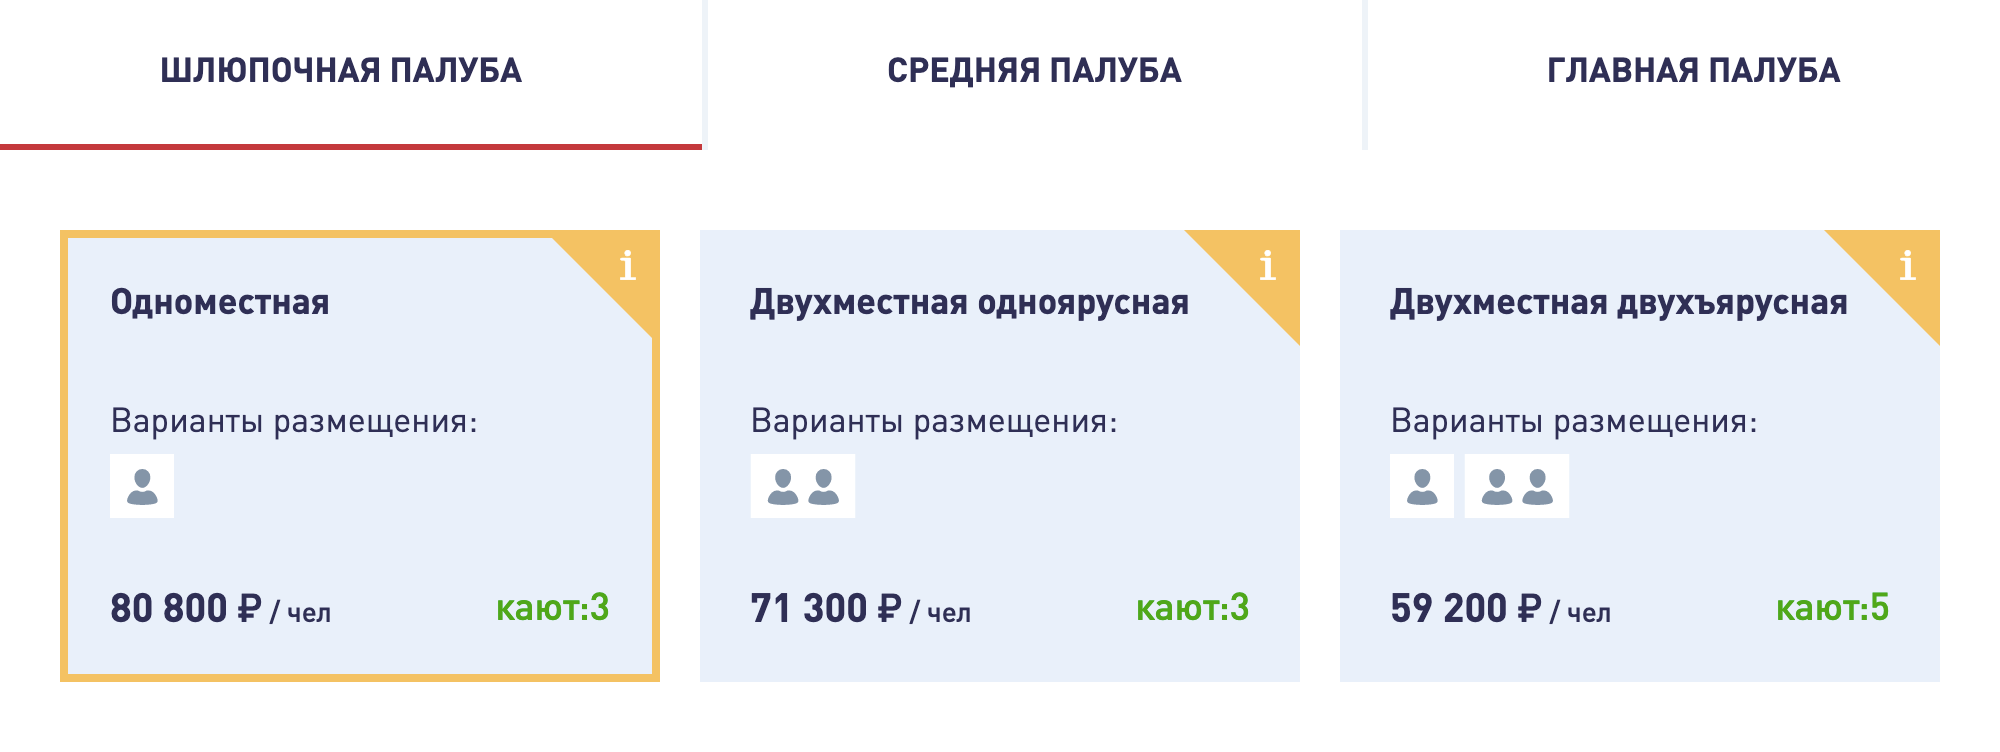 В июле 2020 года есть круиз из Нижнего Новгорода в Пермь на теплоходе «Михаил Фрунзе». Цена билета варьируется от 59 200 ₽ до 80 800 ₽ в зависимости от каюты